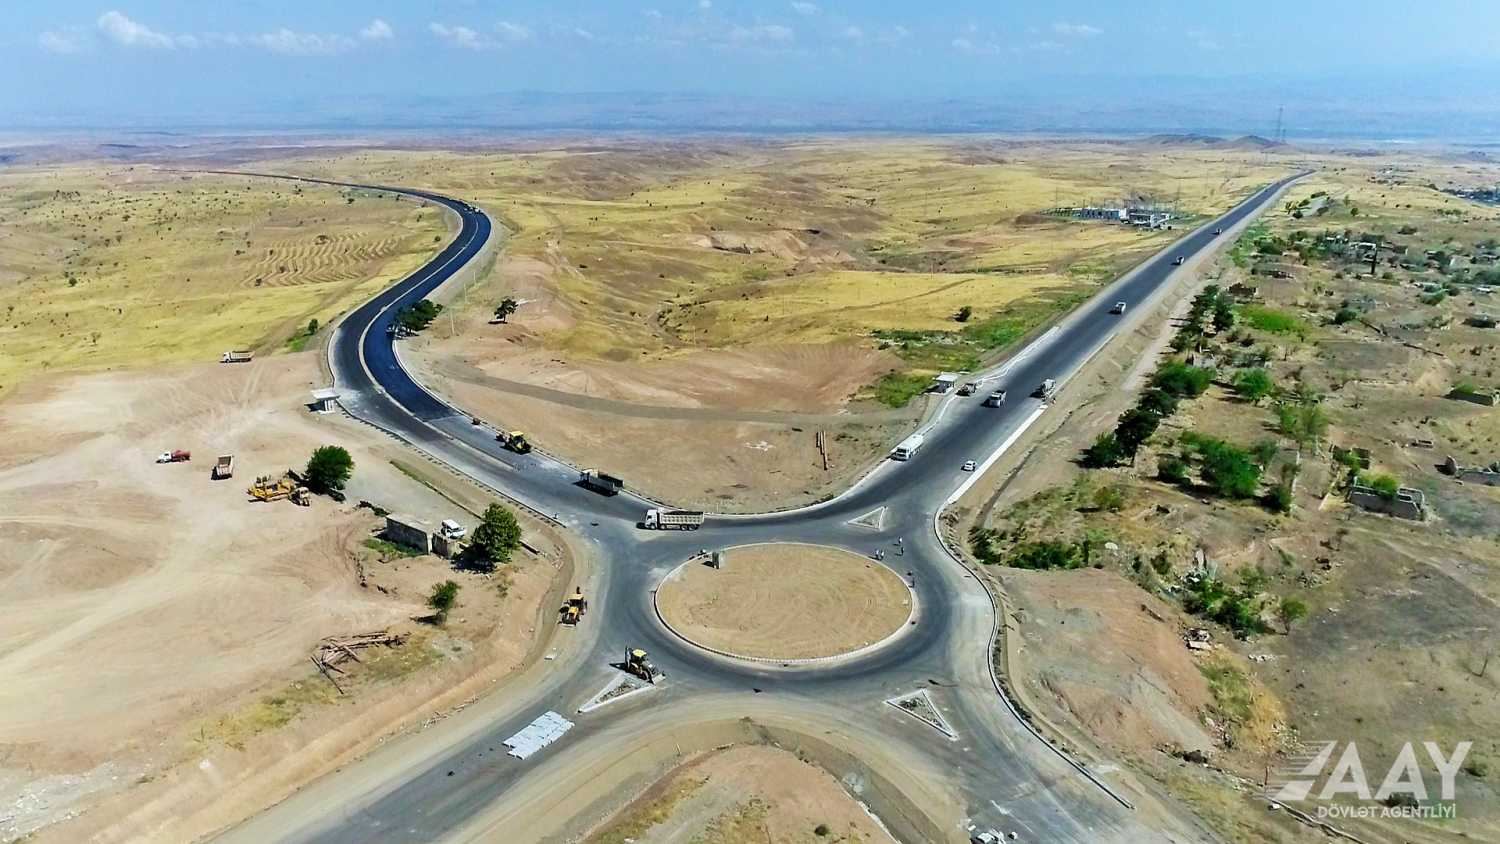 Заасфальтирован 20-километровый участок автодороги Шукюрбейли-Джабраил-Гадрут (ФОТО)